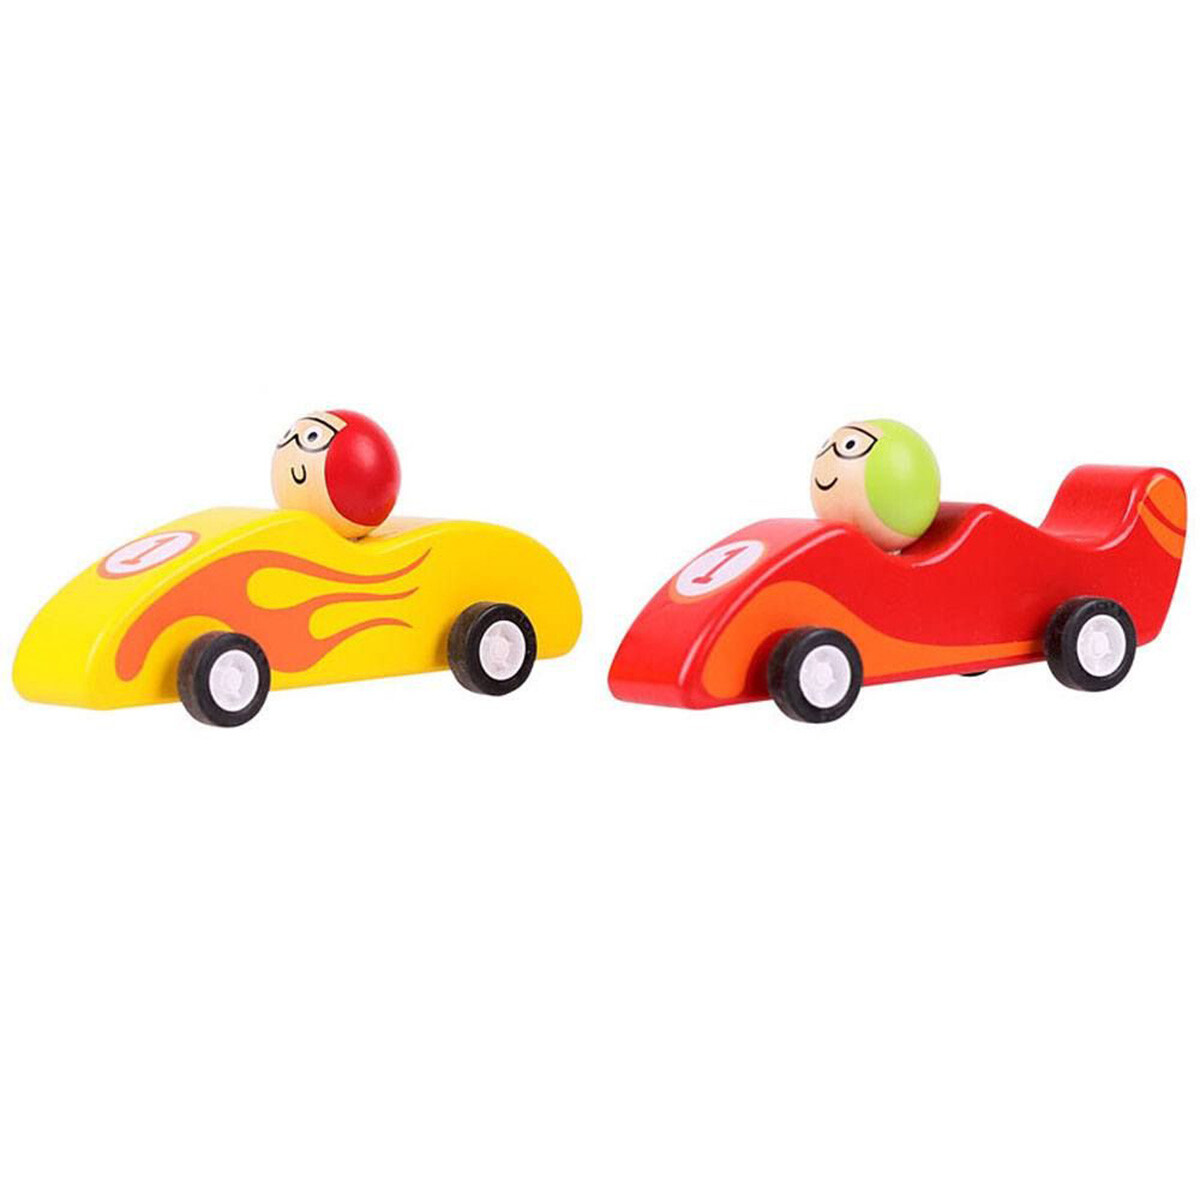 Voiture jouet pour bébé Benobby Kids : voitures à friction pour